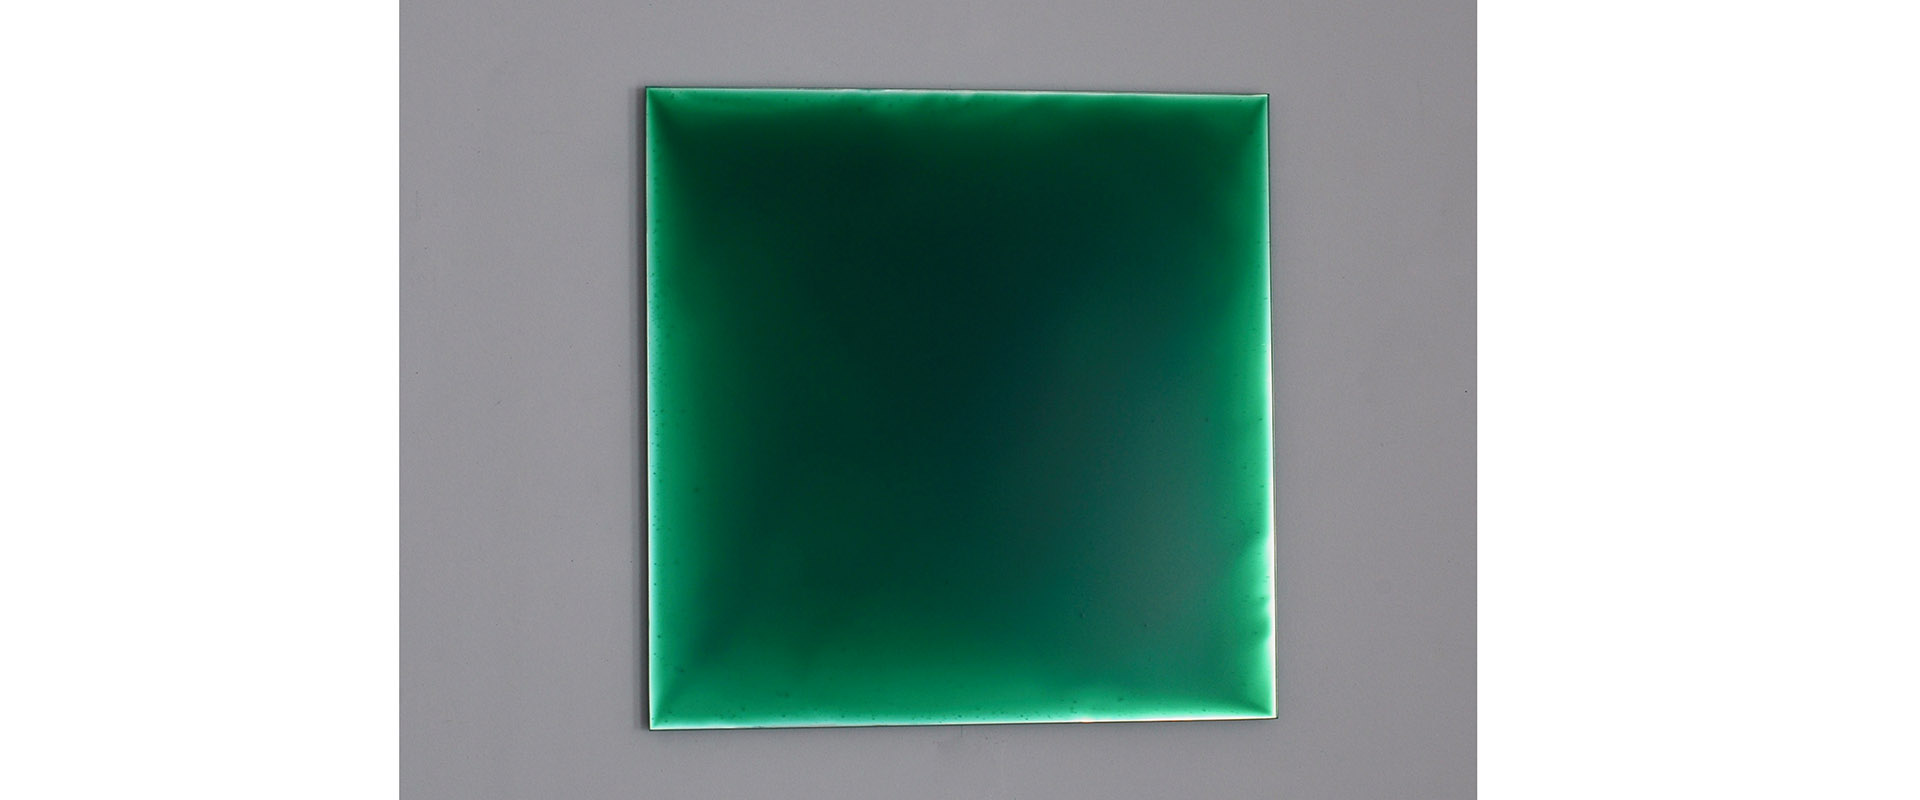 NUMEN #III-BLAU-GRÜN XI - 2020, Pigment, Lack auf verspiegeltem Glas, 30 x 30 cm